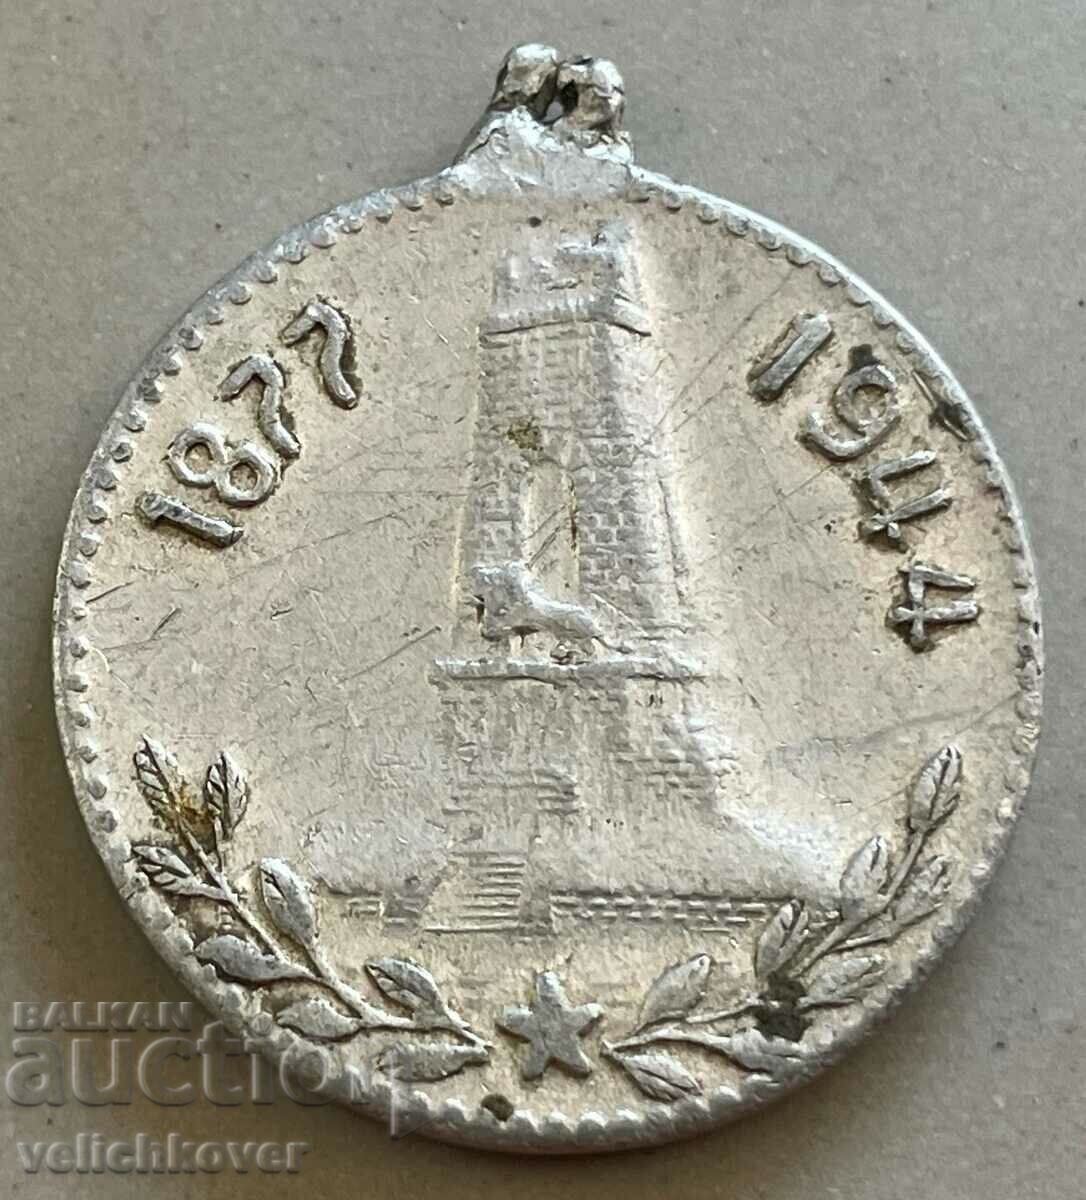 32526 Βουλγαρία μετάλλιο Shipka Peak Μνημείο 1944